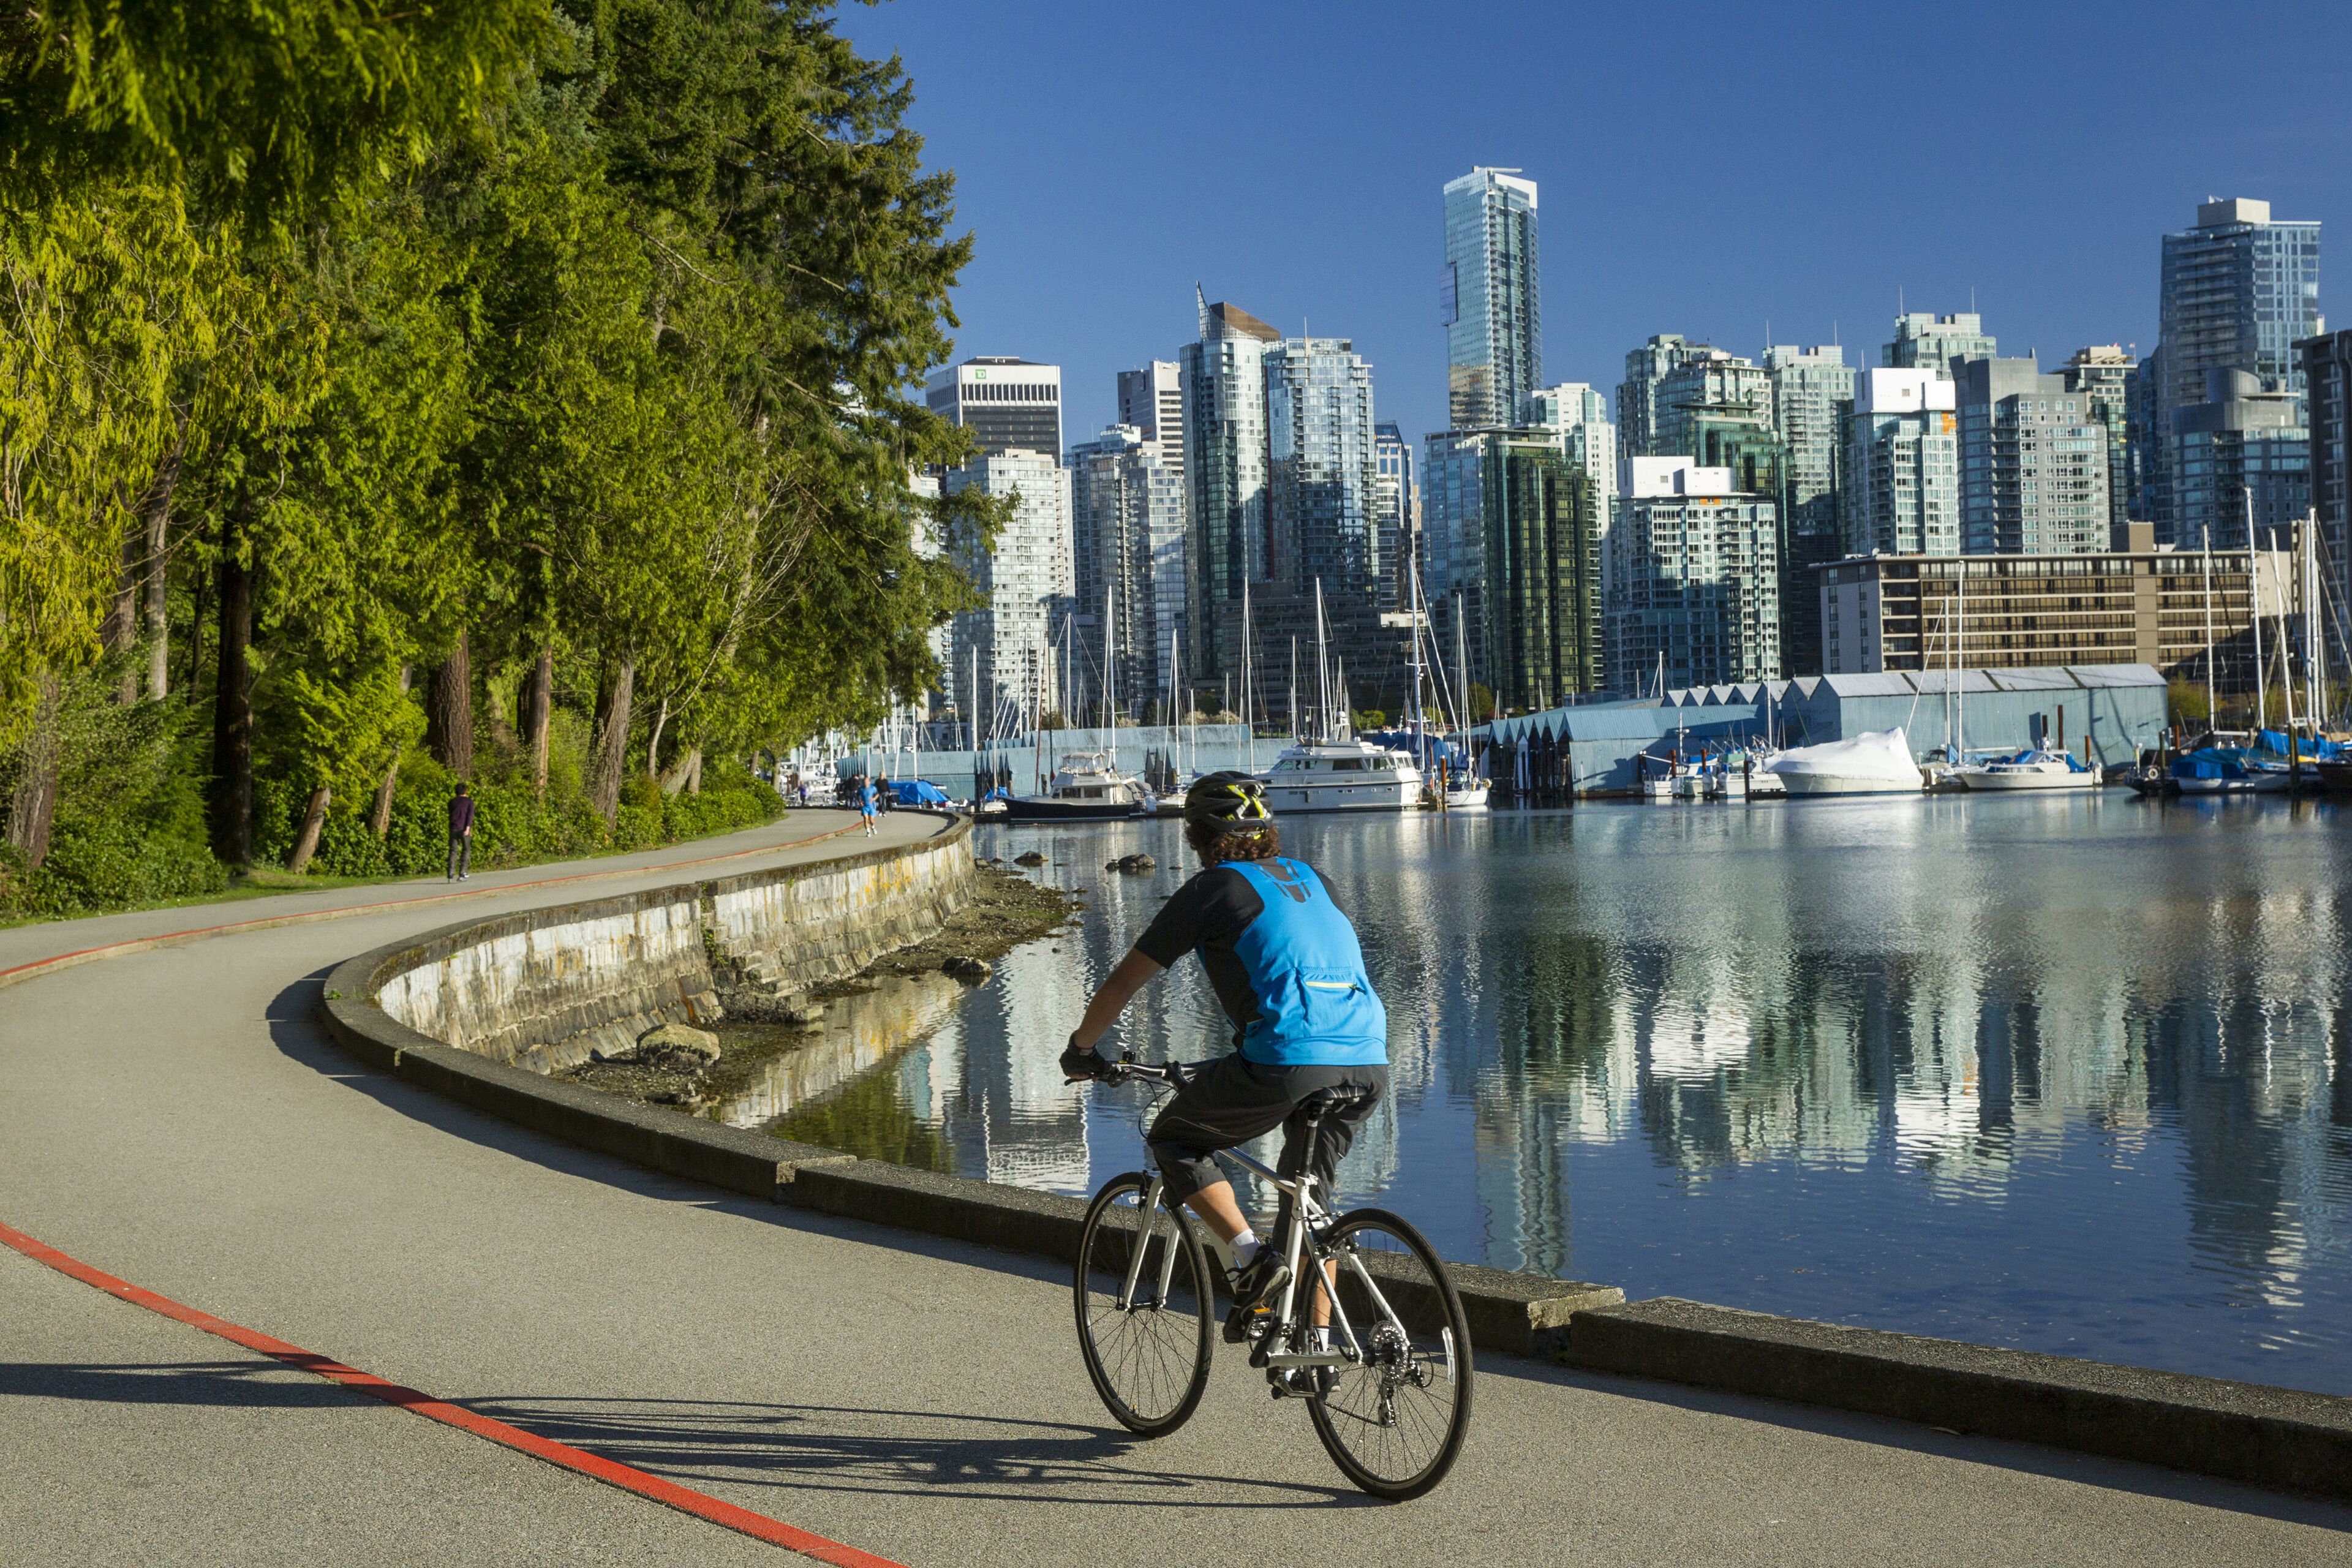 Un homme fait du vélo de location par une journée ensoleillée et chaude de ciel bleu le long de la piste cyclable de la digue dans le parc Stanley au centre-ville de Vancouver, Colombie-Britannique, Canada.